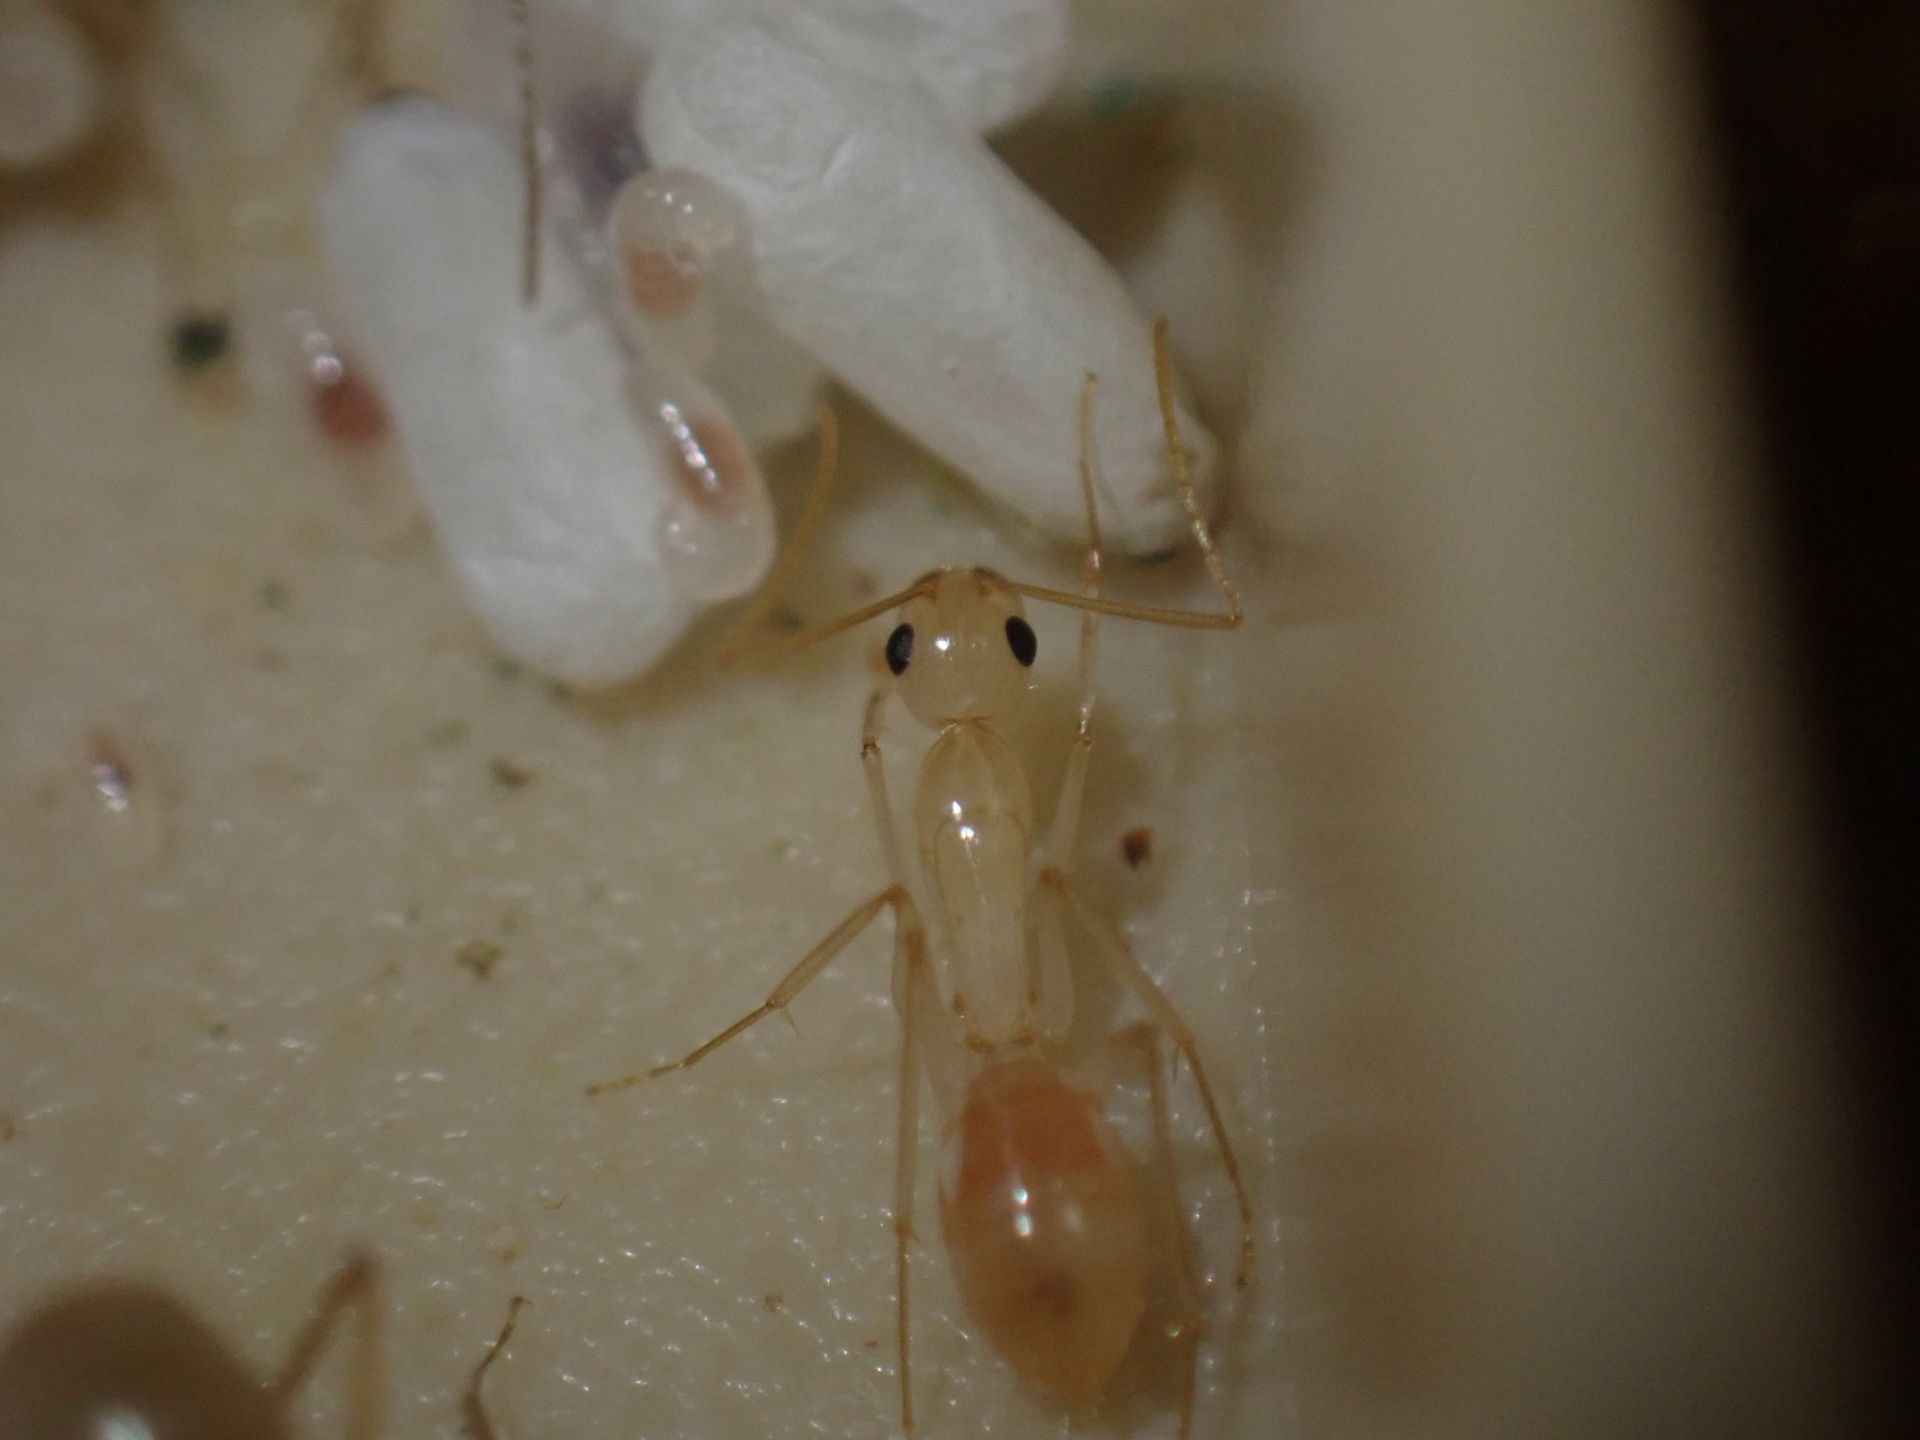 Camponotus fragilis 1